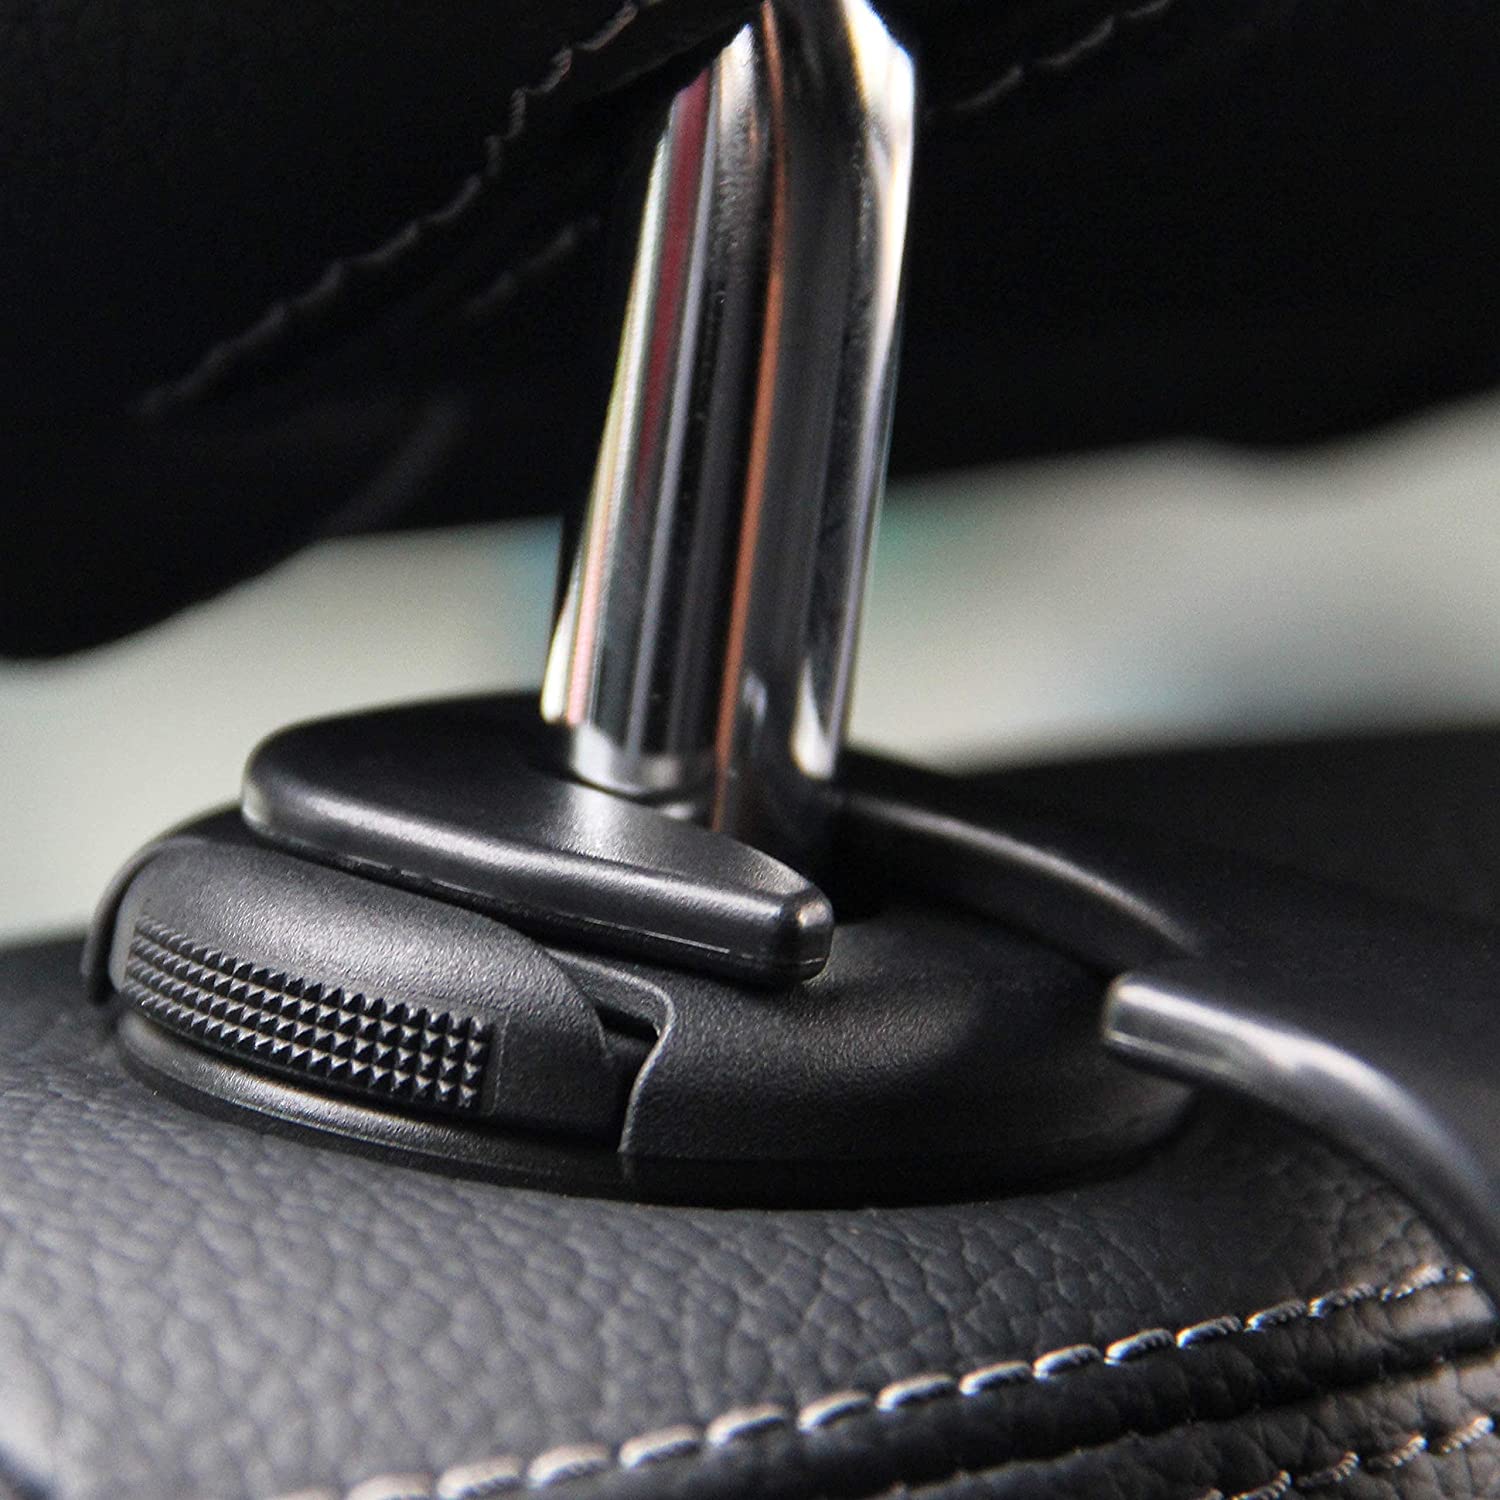 Detalhe de um gancho resistente preto preso ao apoio de cabeça do assento do carro, destacando sua compatibilidade e facilidade de instalação